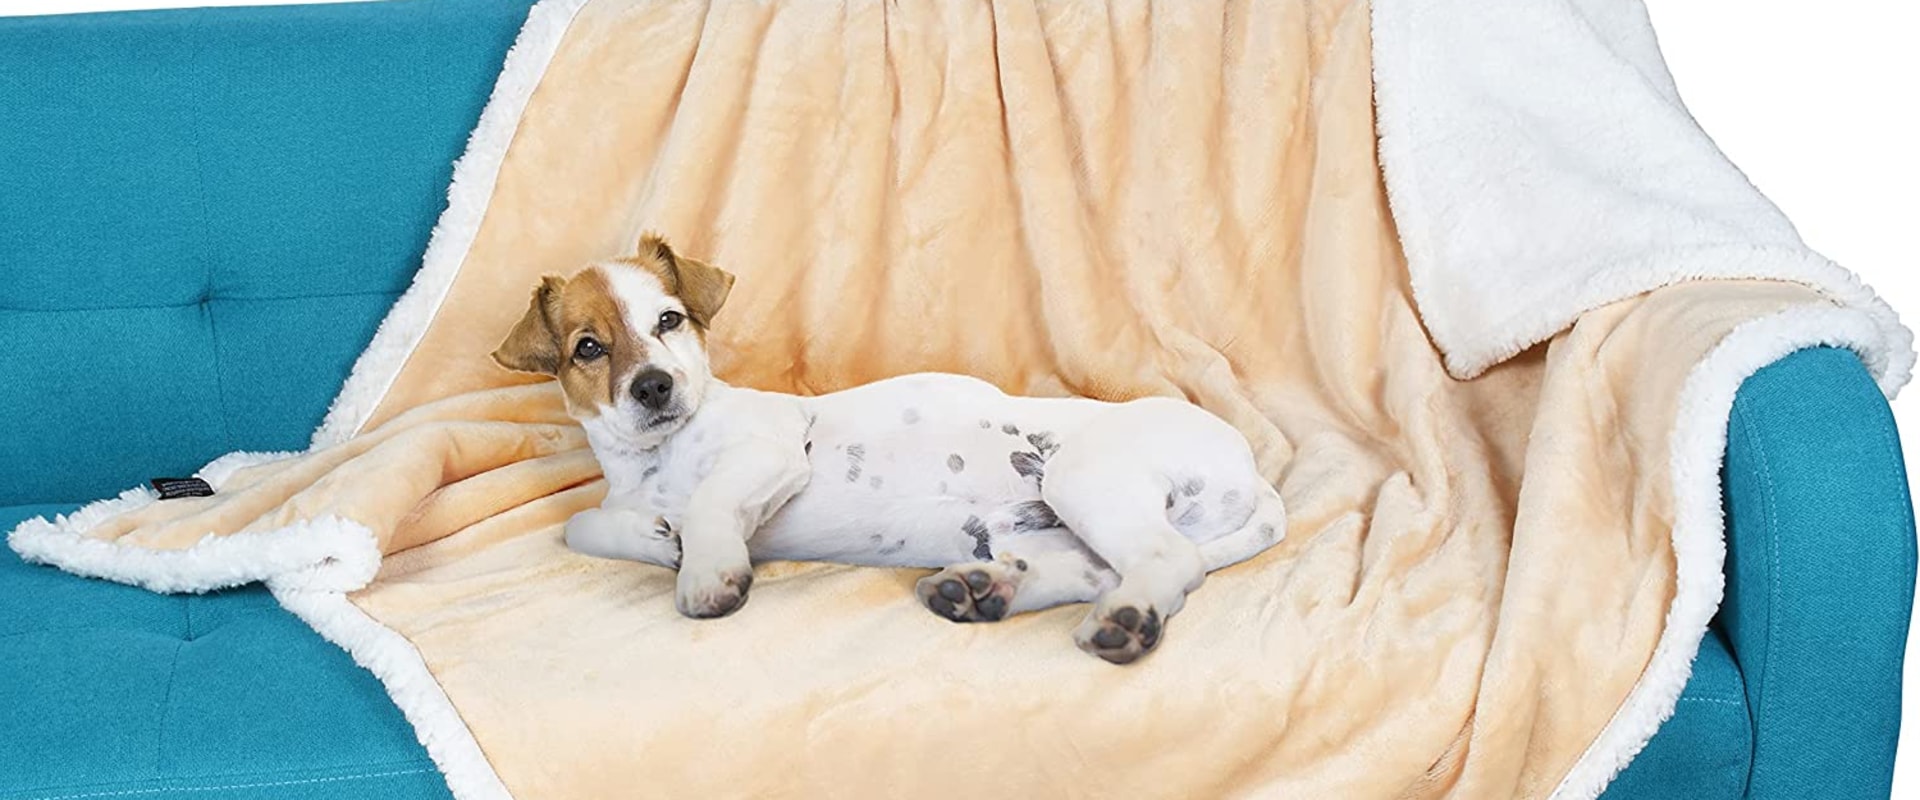 Welke dekens zijn het beste voor honden?